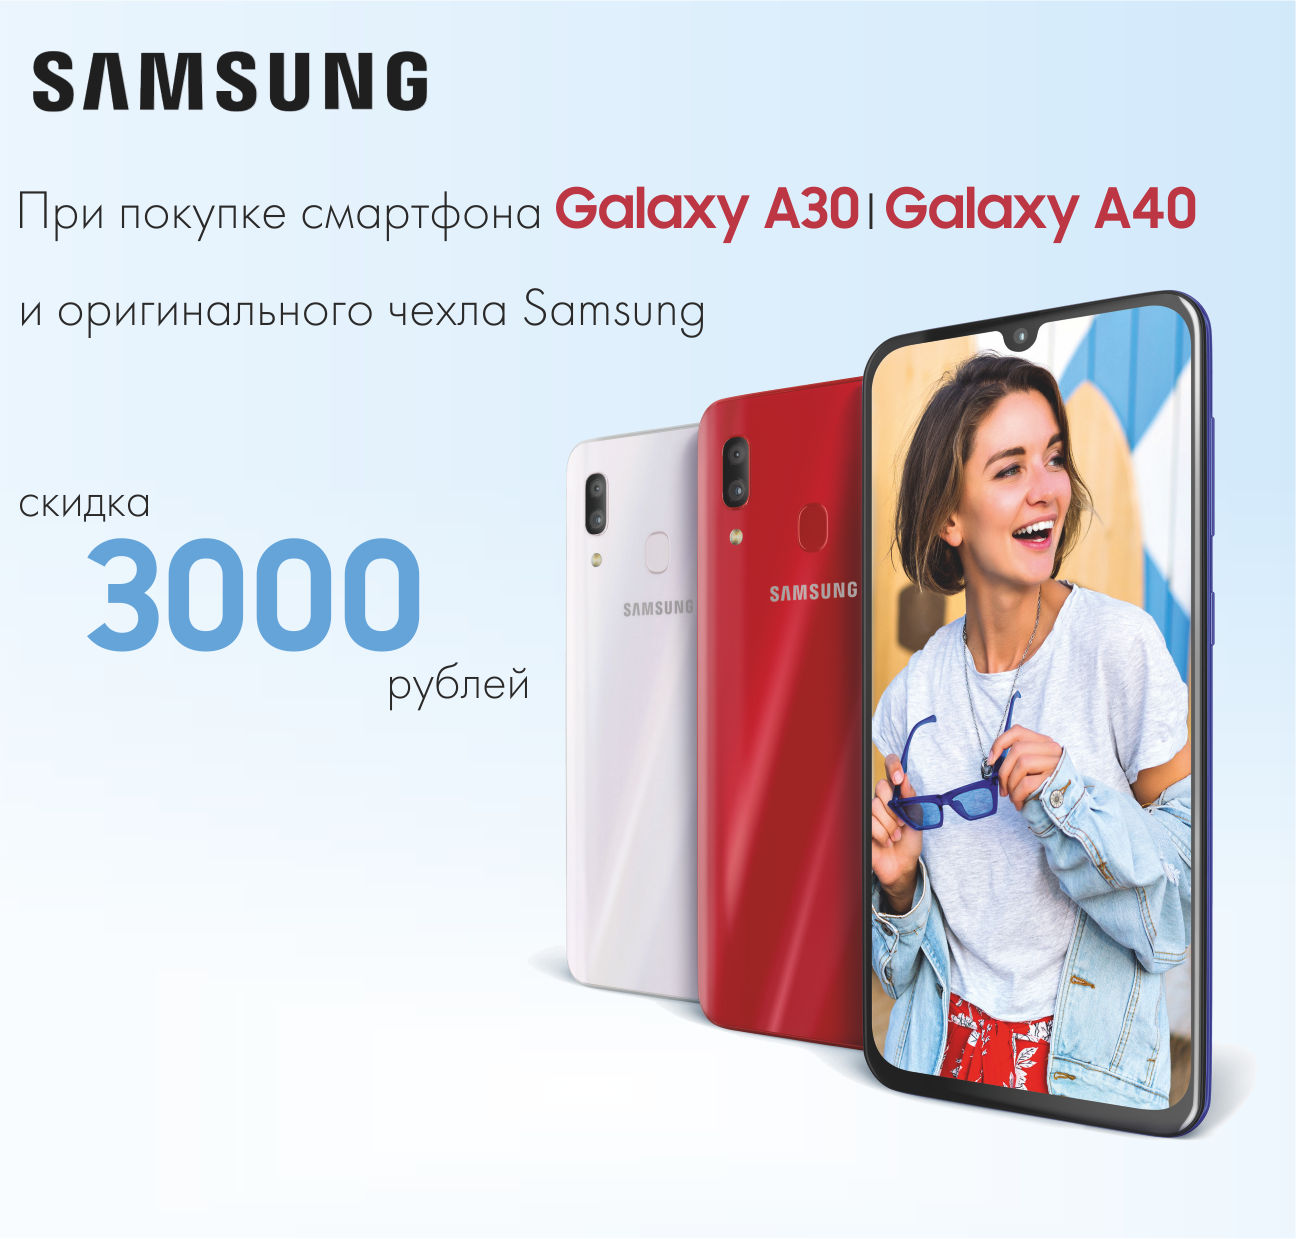 При покупке Samsung Galaxy A30/A40 + чехол скидка 3000 рублей!